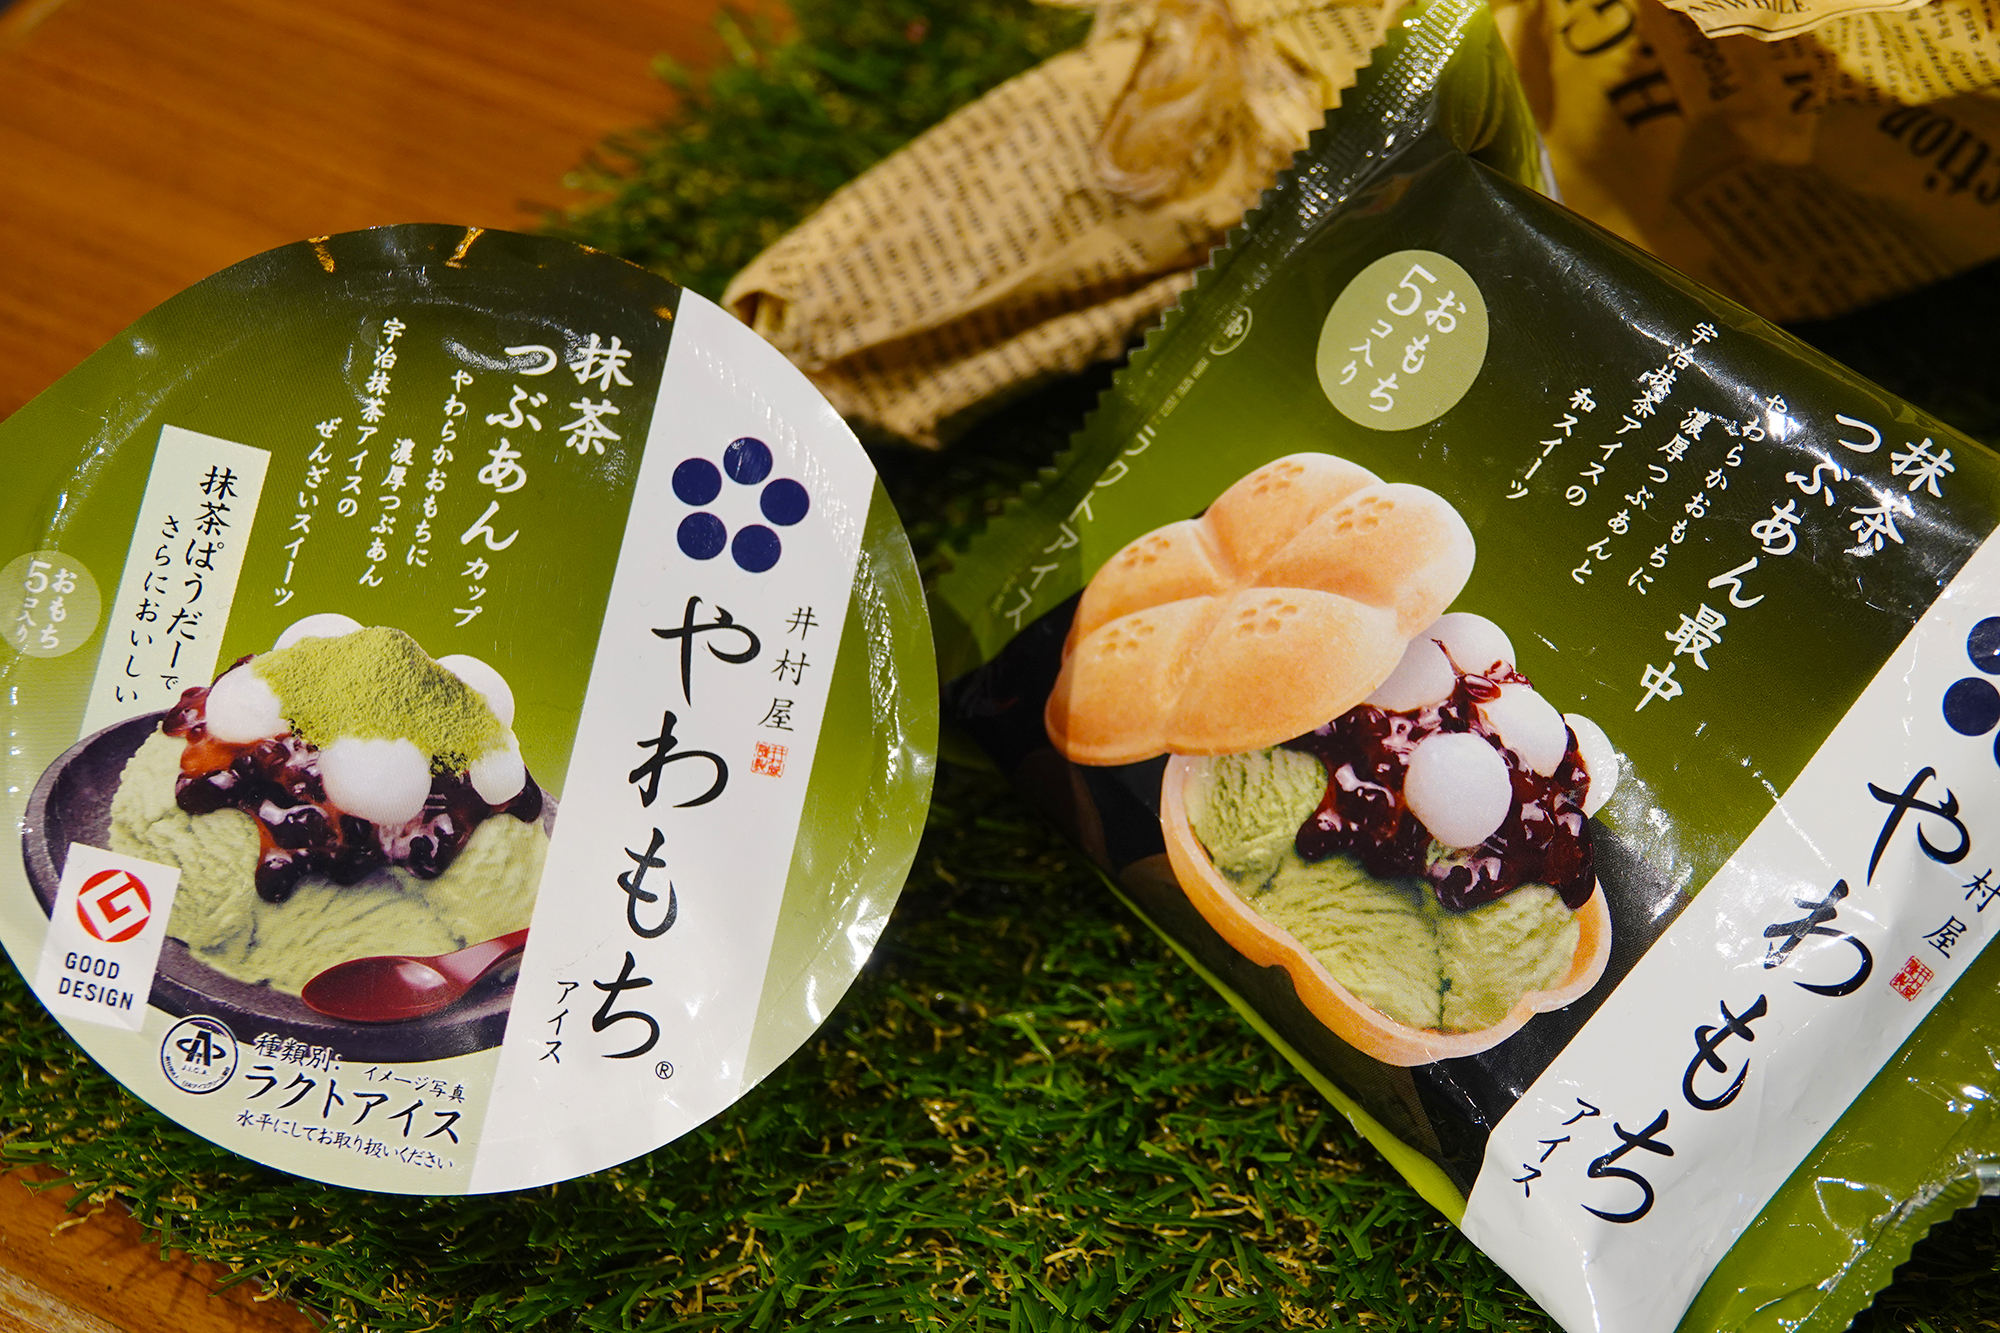 有片 日本百年冰點心專家 井村屋 新品上市 草莓 芒果麻糬湯圓冰戀愛滋味大爆發 上報 生活